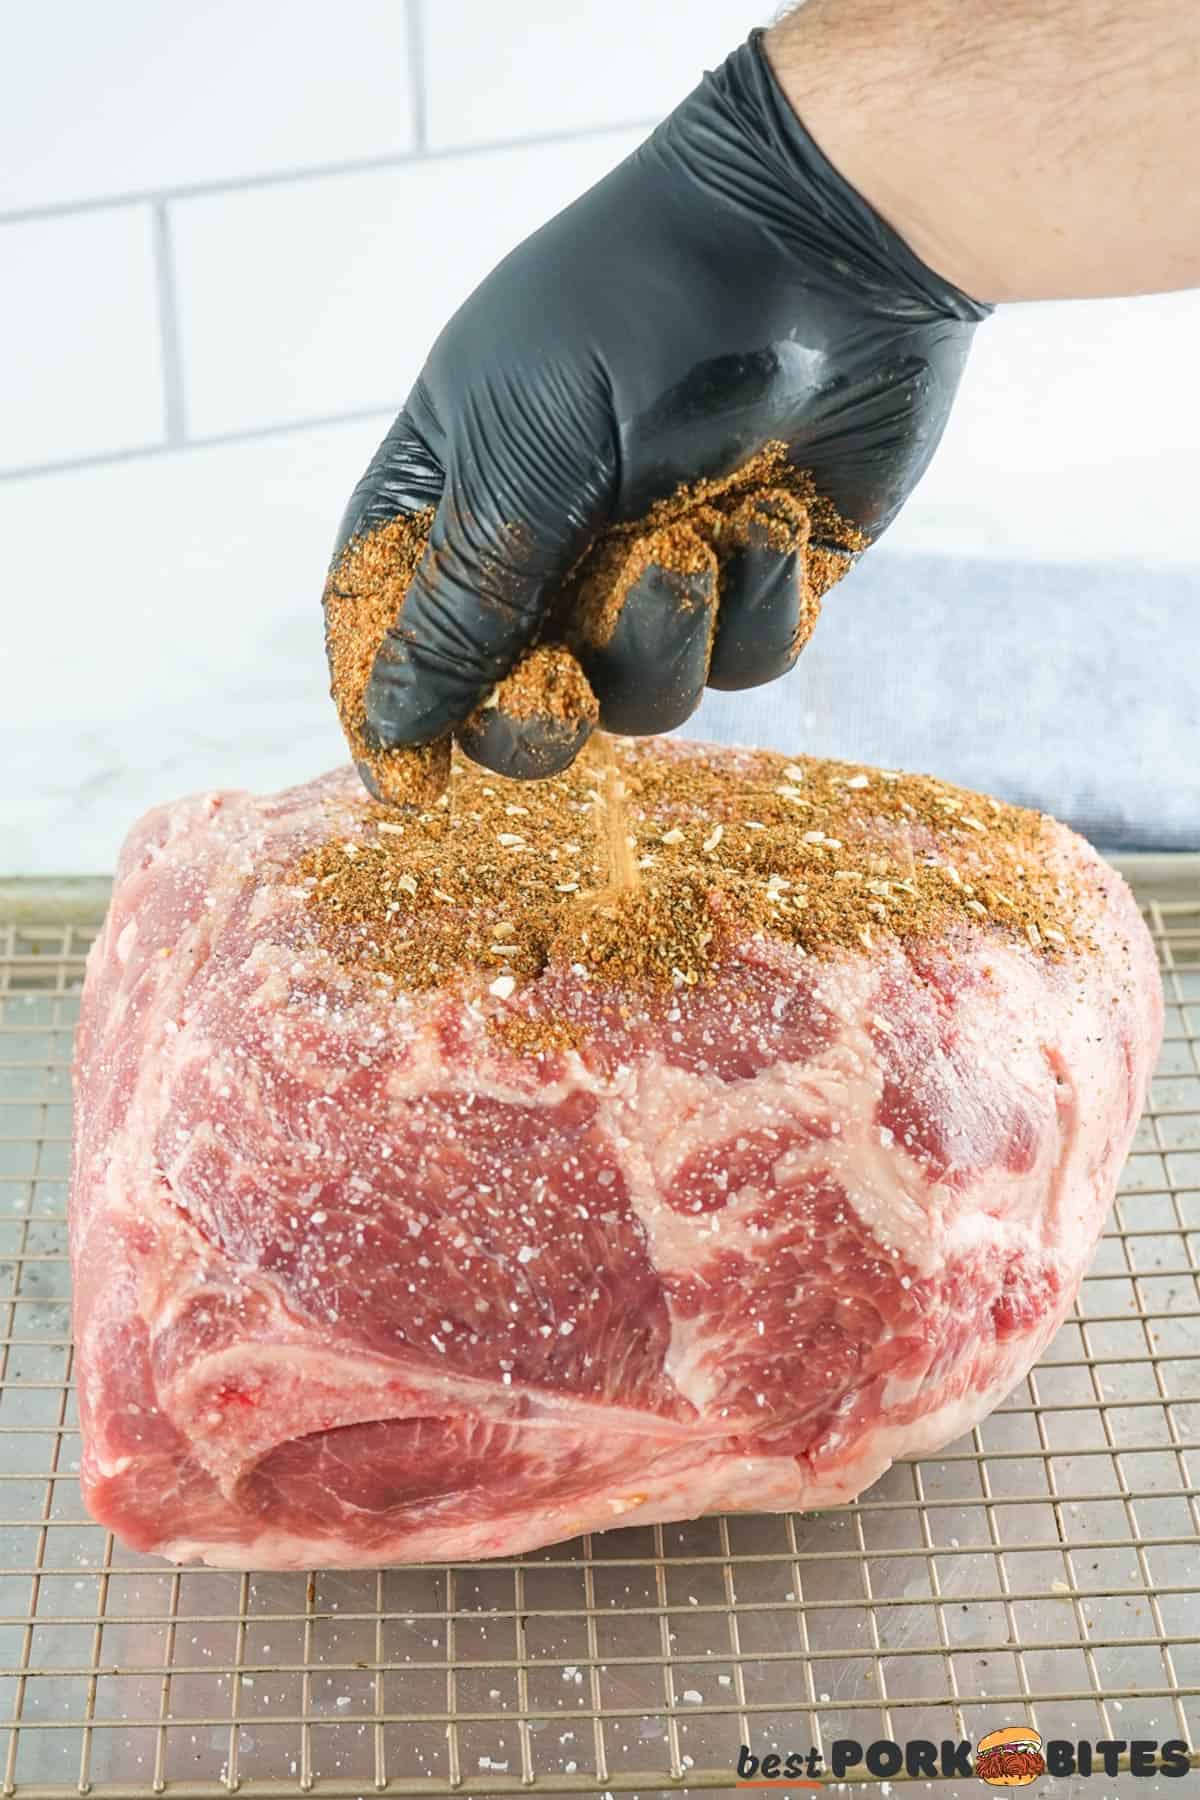 adding pork rub to pork